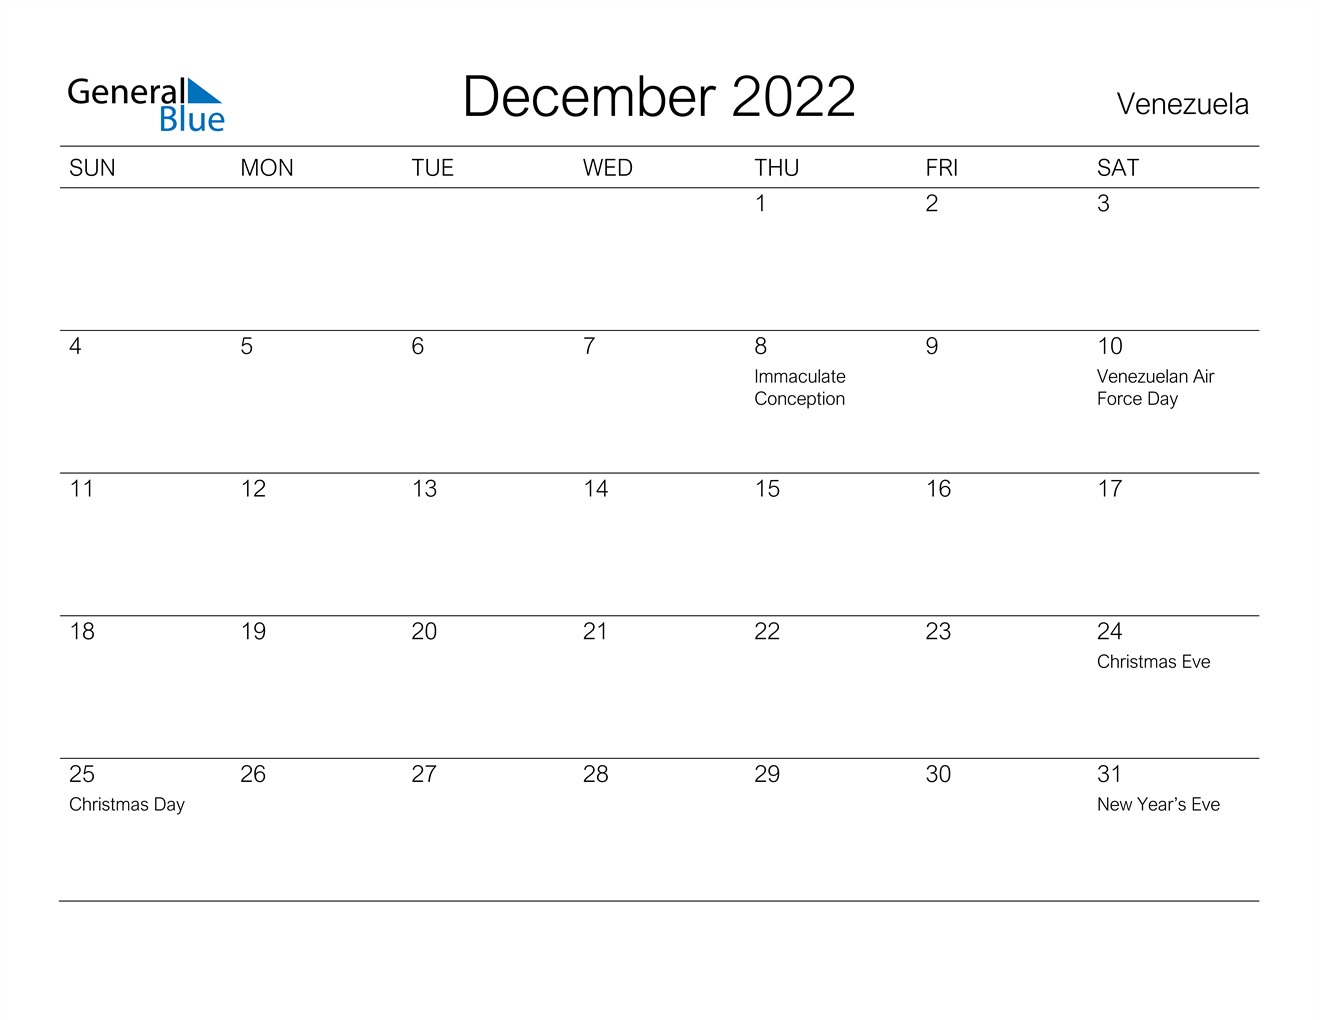 December 2022 Calendar - Venezuela